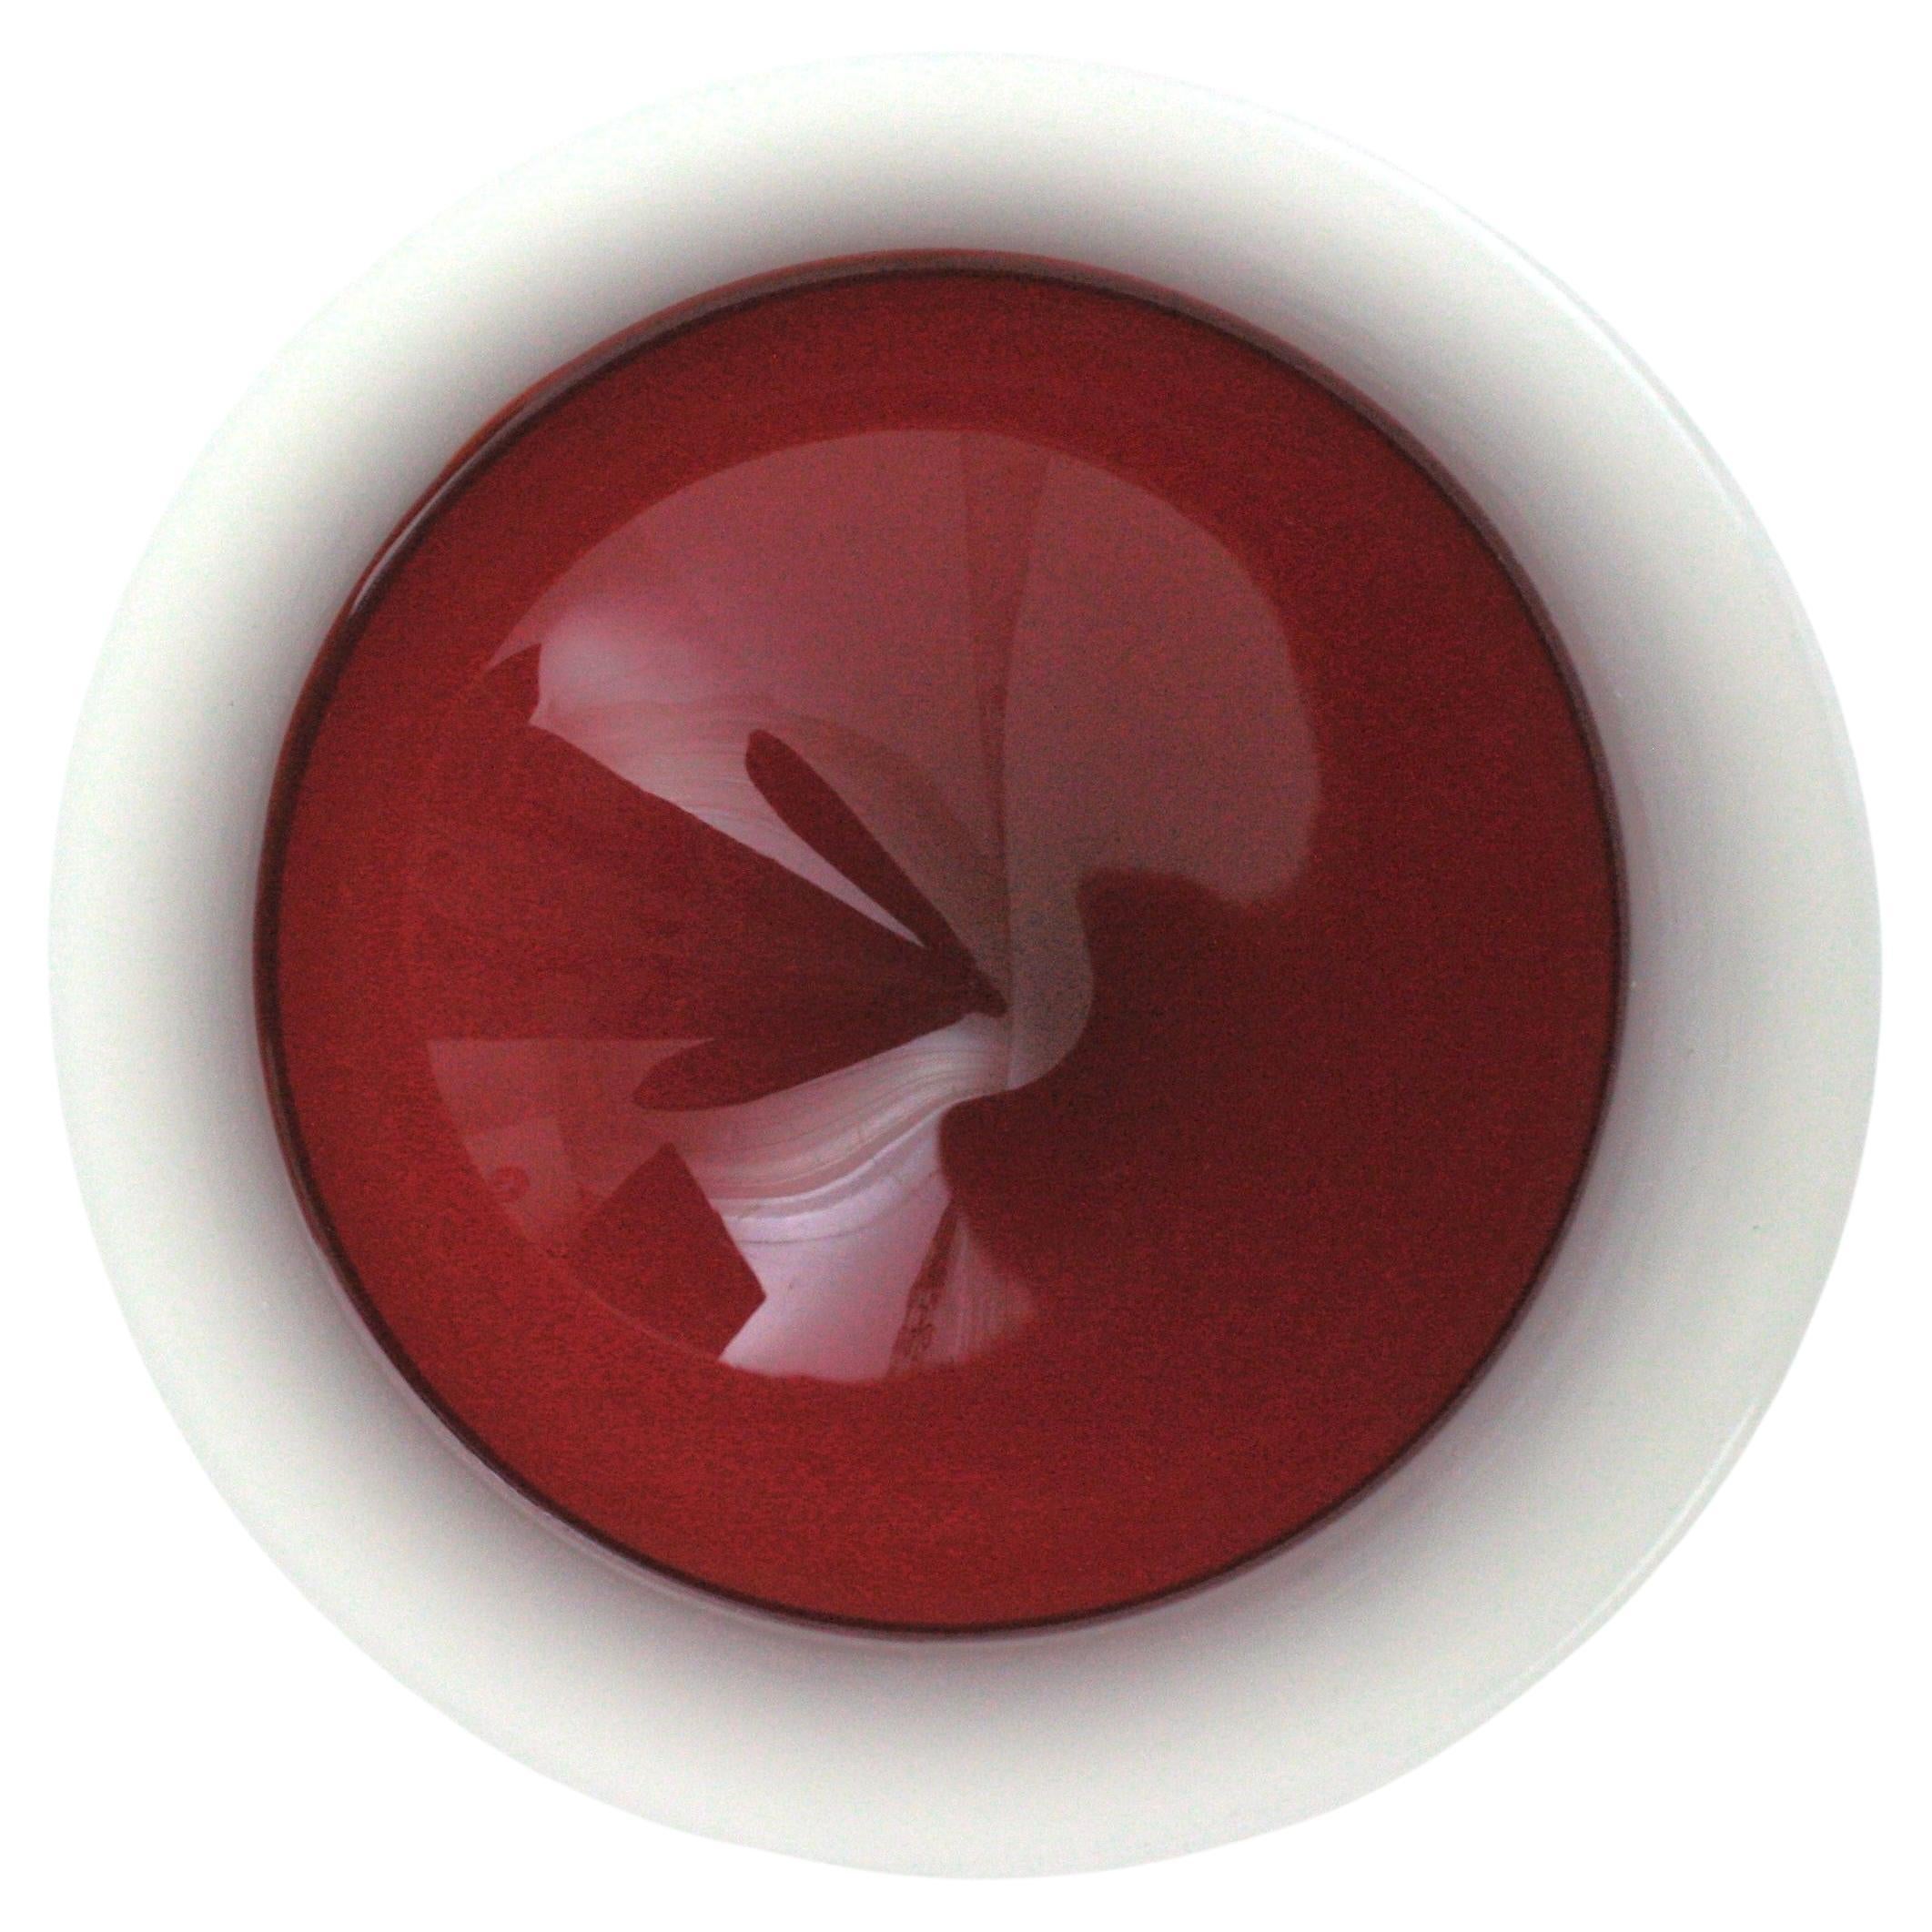 Auffällige runde Geodenschale aus mundgeblasenem Sommerso Murano Glas in Rot und Weiß. Archimede Seguso, Italien, 1950er Jahre.
Alabastro Weißglas mit  rotes Glas im Mittelteil und Sommerso-Technik.
Lebendige Farbe.
Perfekt als Geschenkidee und